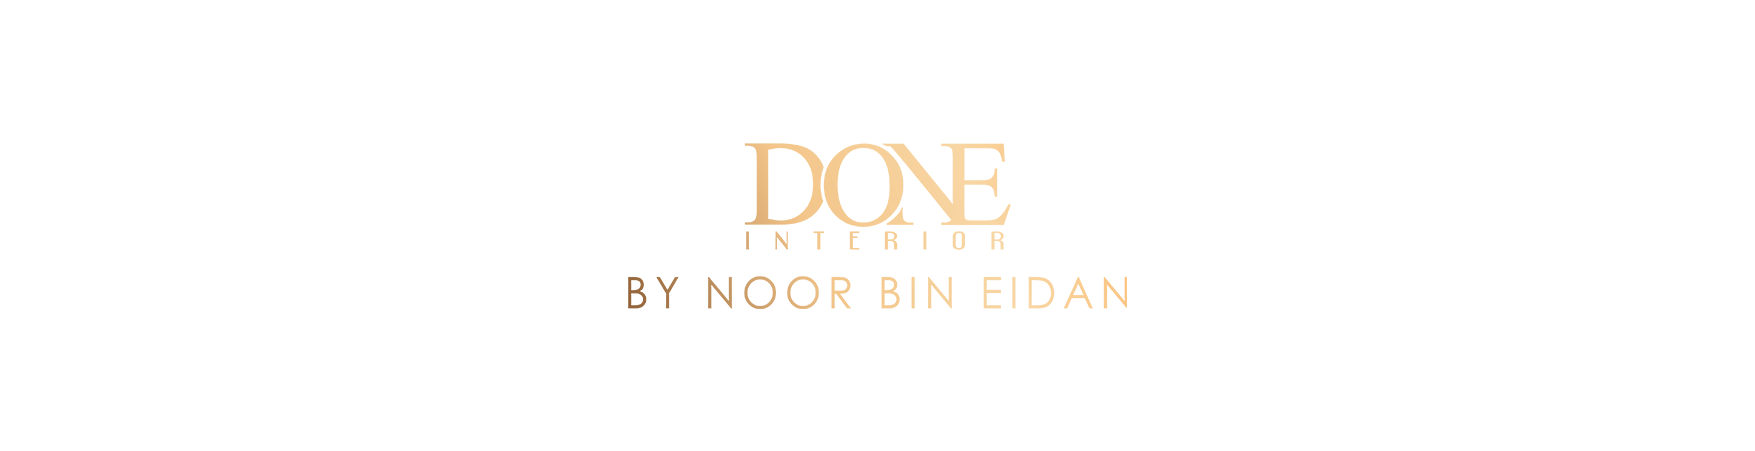 Done Interior by Noor Bin Eidan